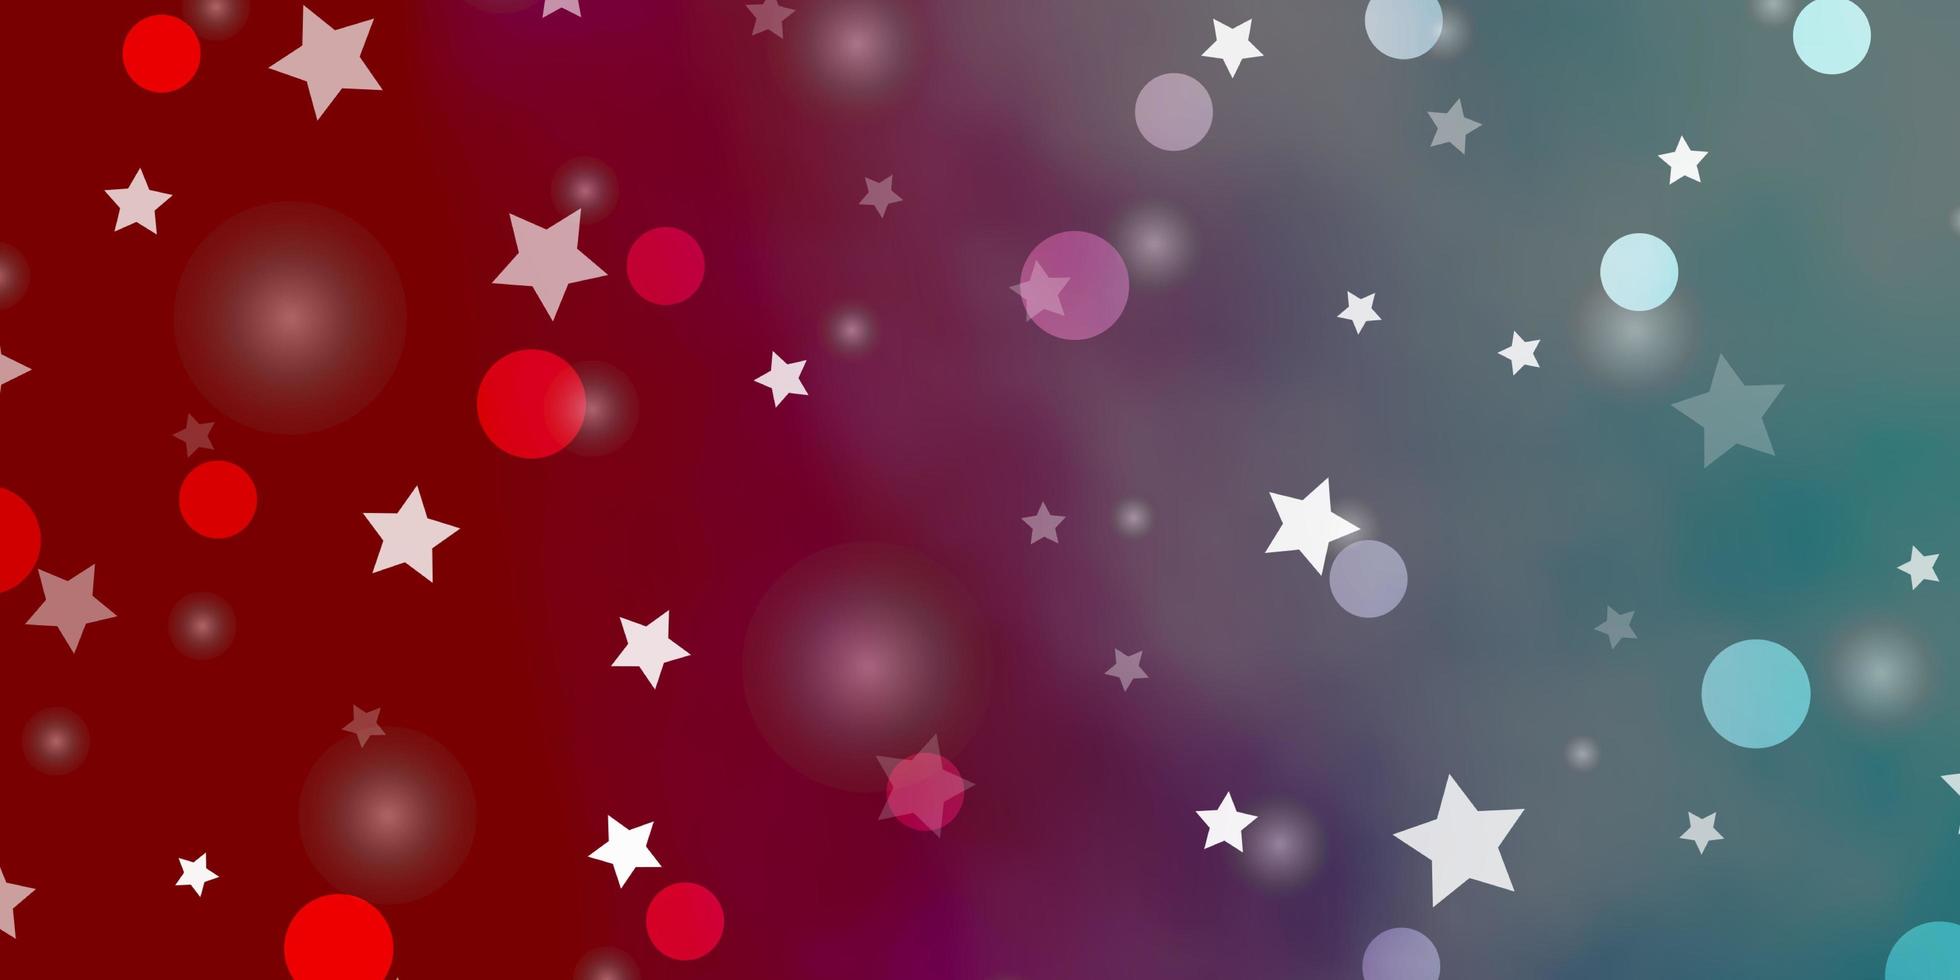 Fondo de vector azul claro, rojo con círculos, estrellas. Ilustración abstracta de brillo con gotas de colores, estrellas. plantilla para tarjetas de visita, sitios web.